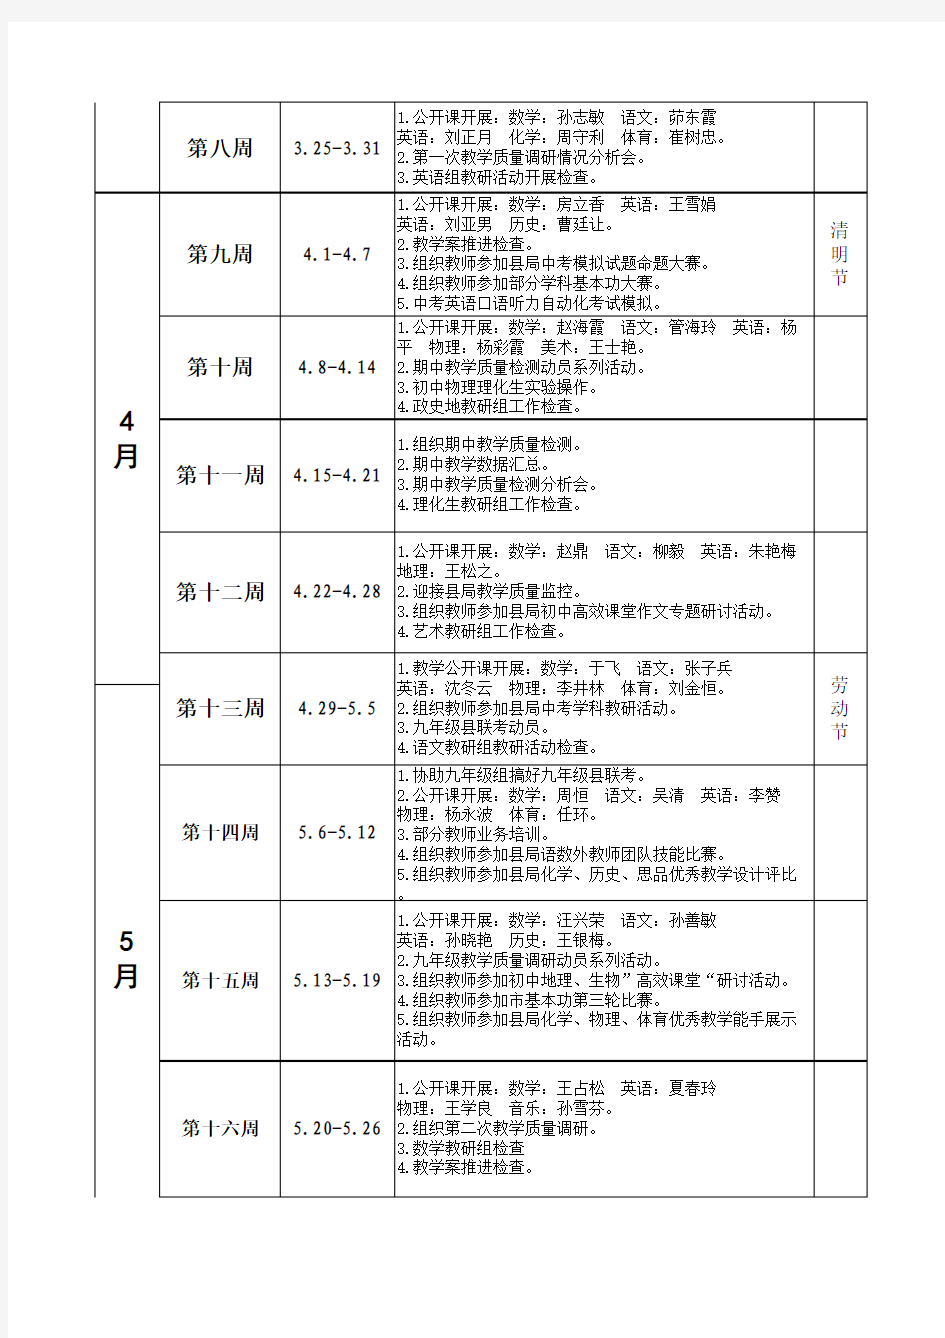 灌云县小伊中学2011-2012学年度第二学期教务处工作行事历